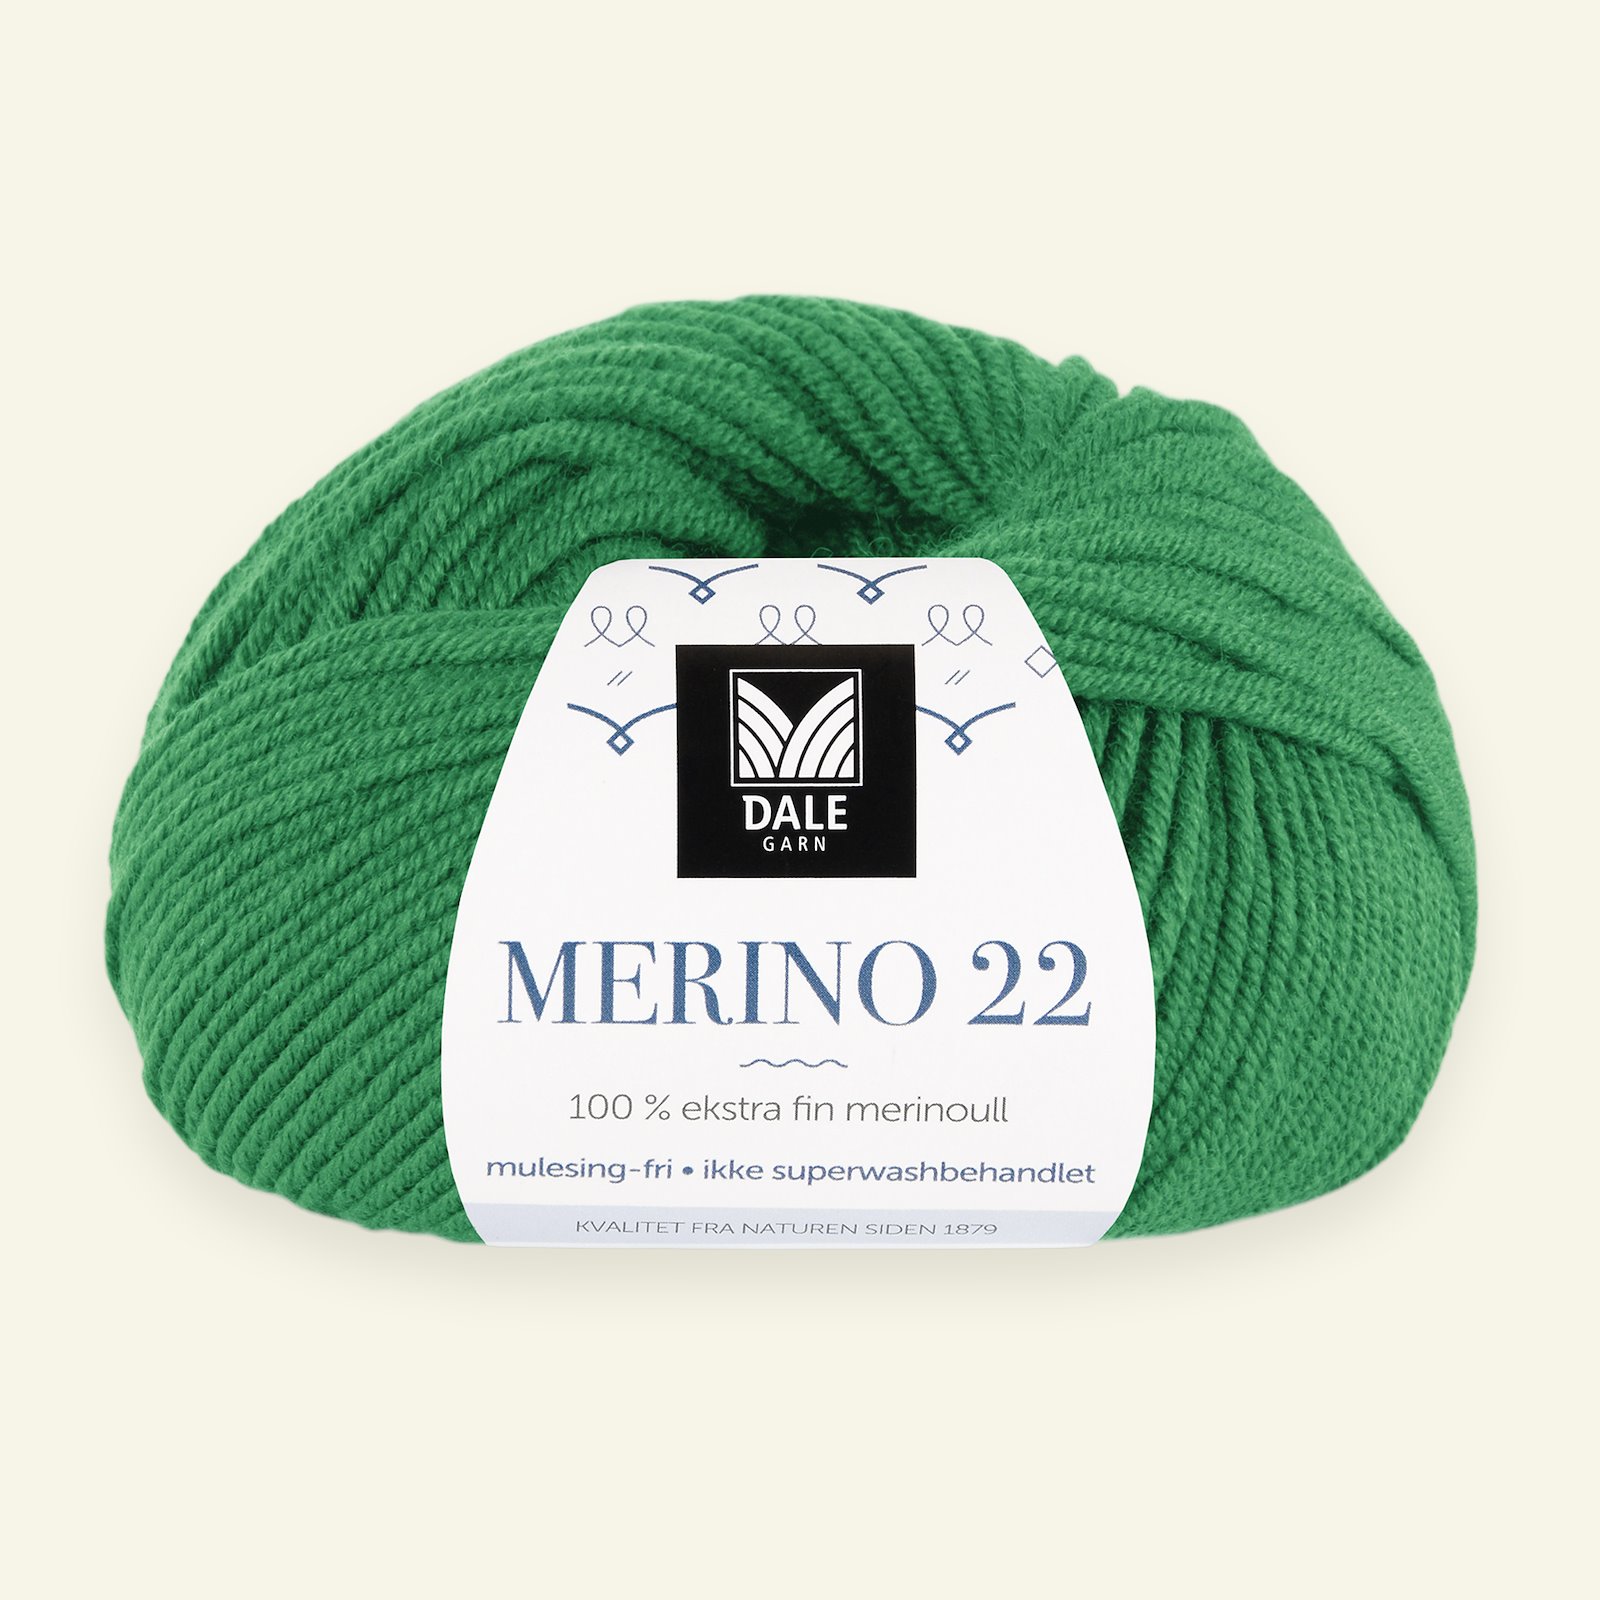 Dale Garn, 100% ekstra fint merinogarn "Merino 22", Skarp grønn (2031) 90000392_pack